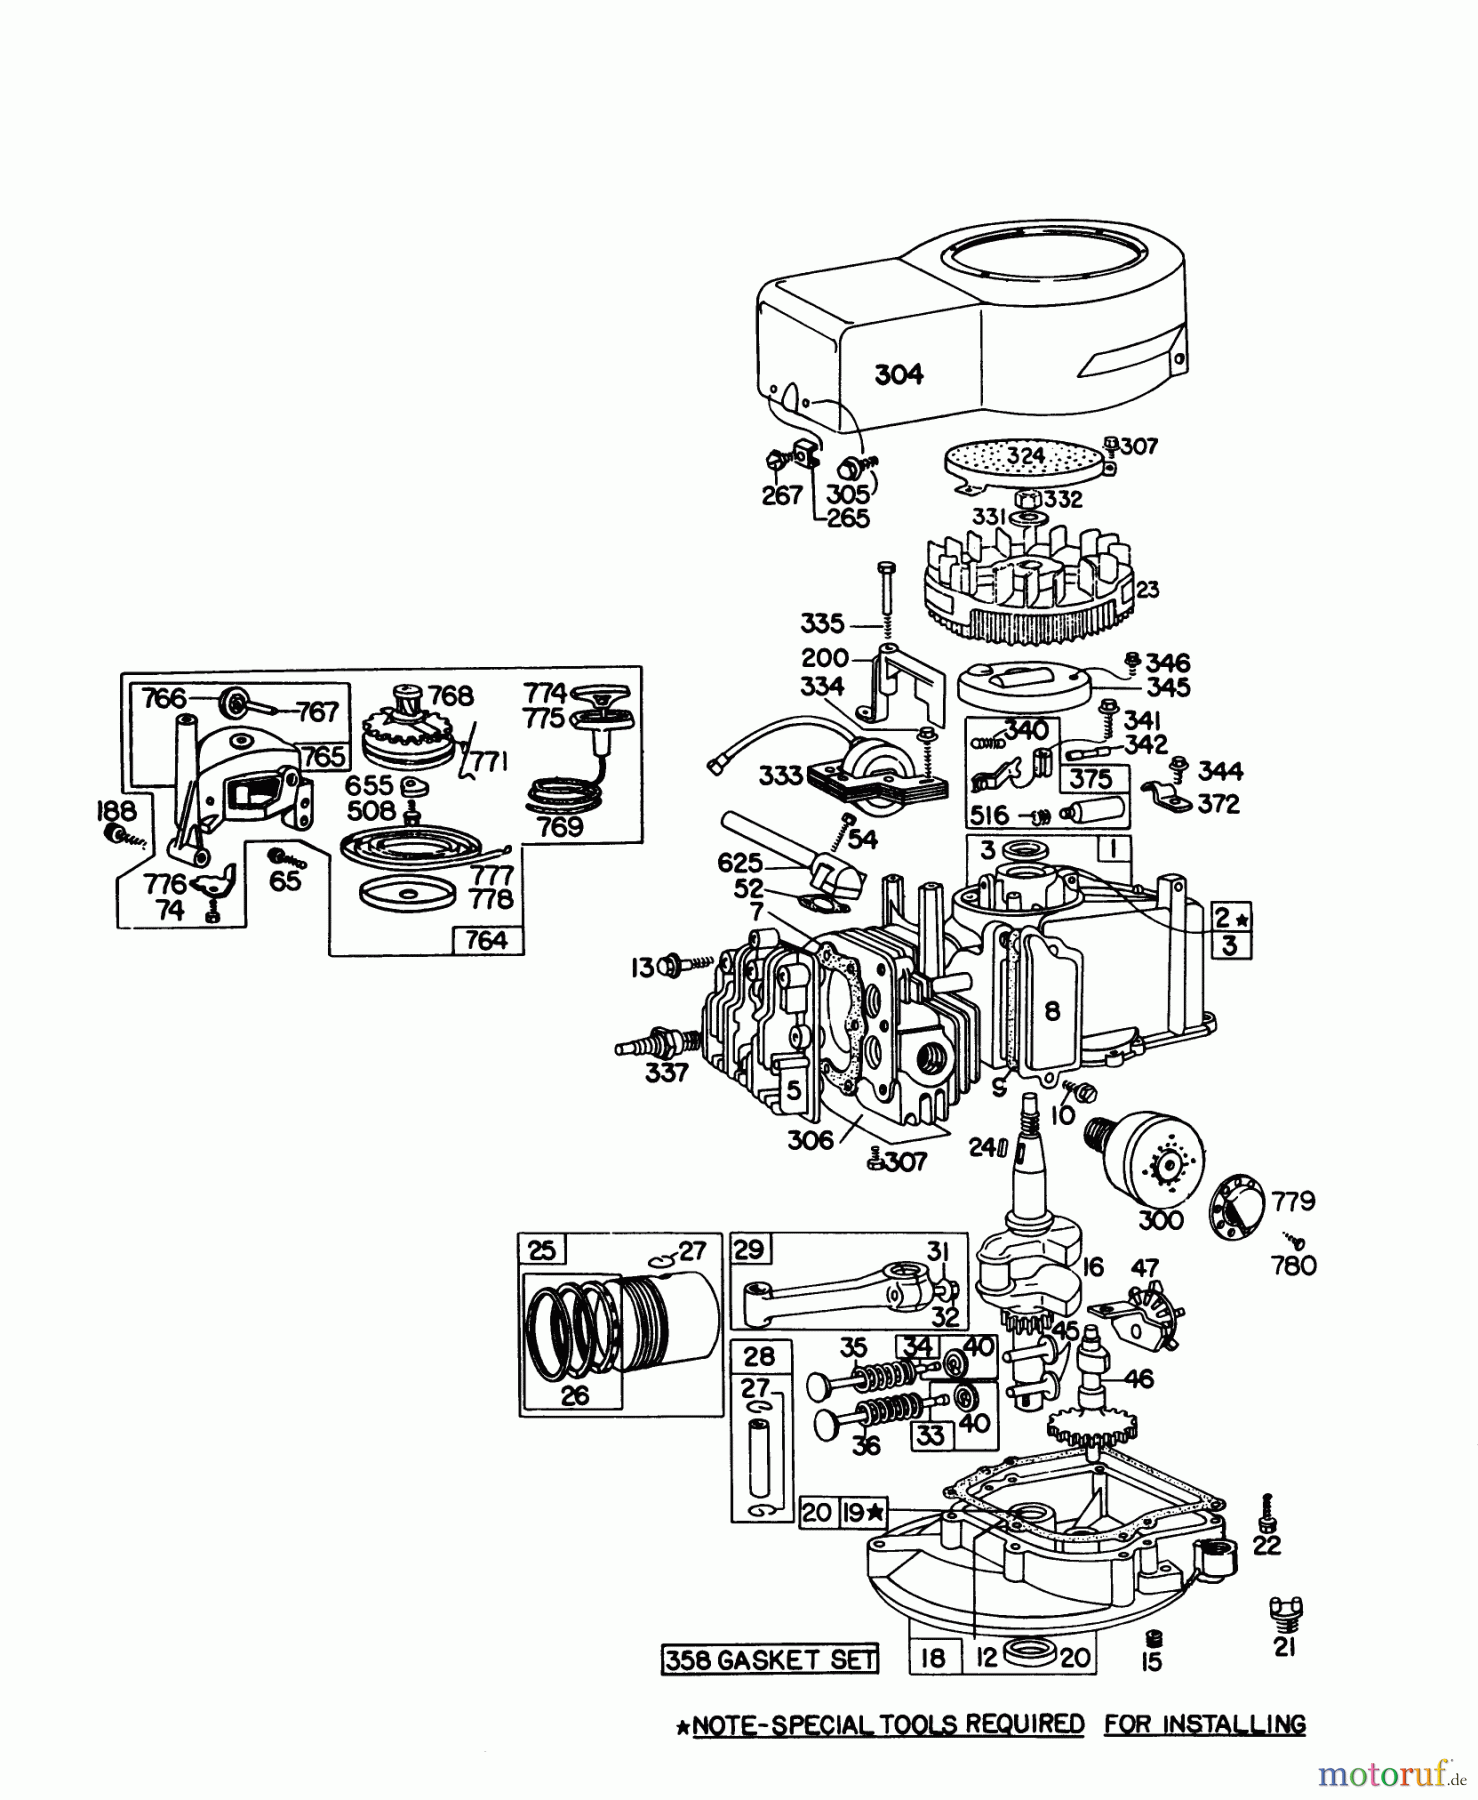  Toro Neu Mowers, Walk-Behind Seite 1 16155 - Toro Whirlwind II Lawnmower, 1978 (8000001-8999999) ENGINE BRIGGS & STRATTON MODEL 92908-1895-01 FOR 21